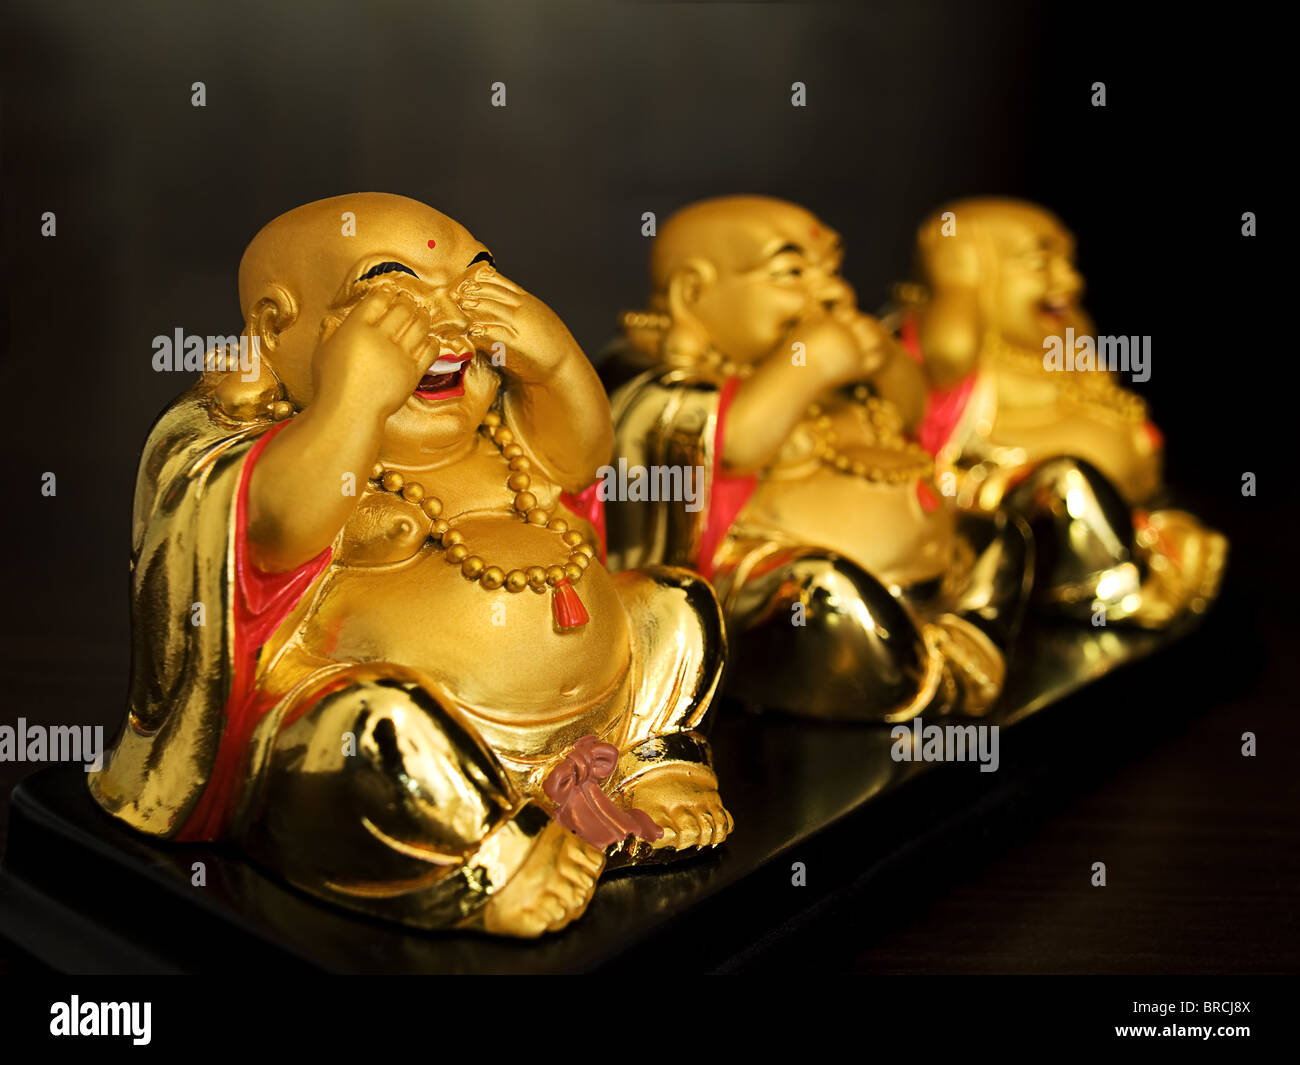 Gefühle zeigen Buddhas auf die drei Skulpturen gezeigt... Stockfoto